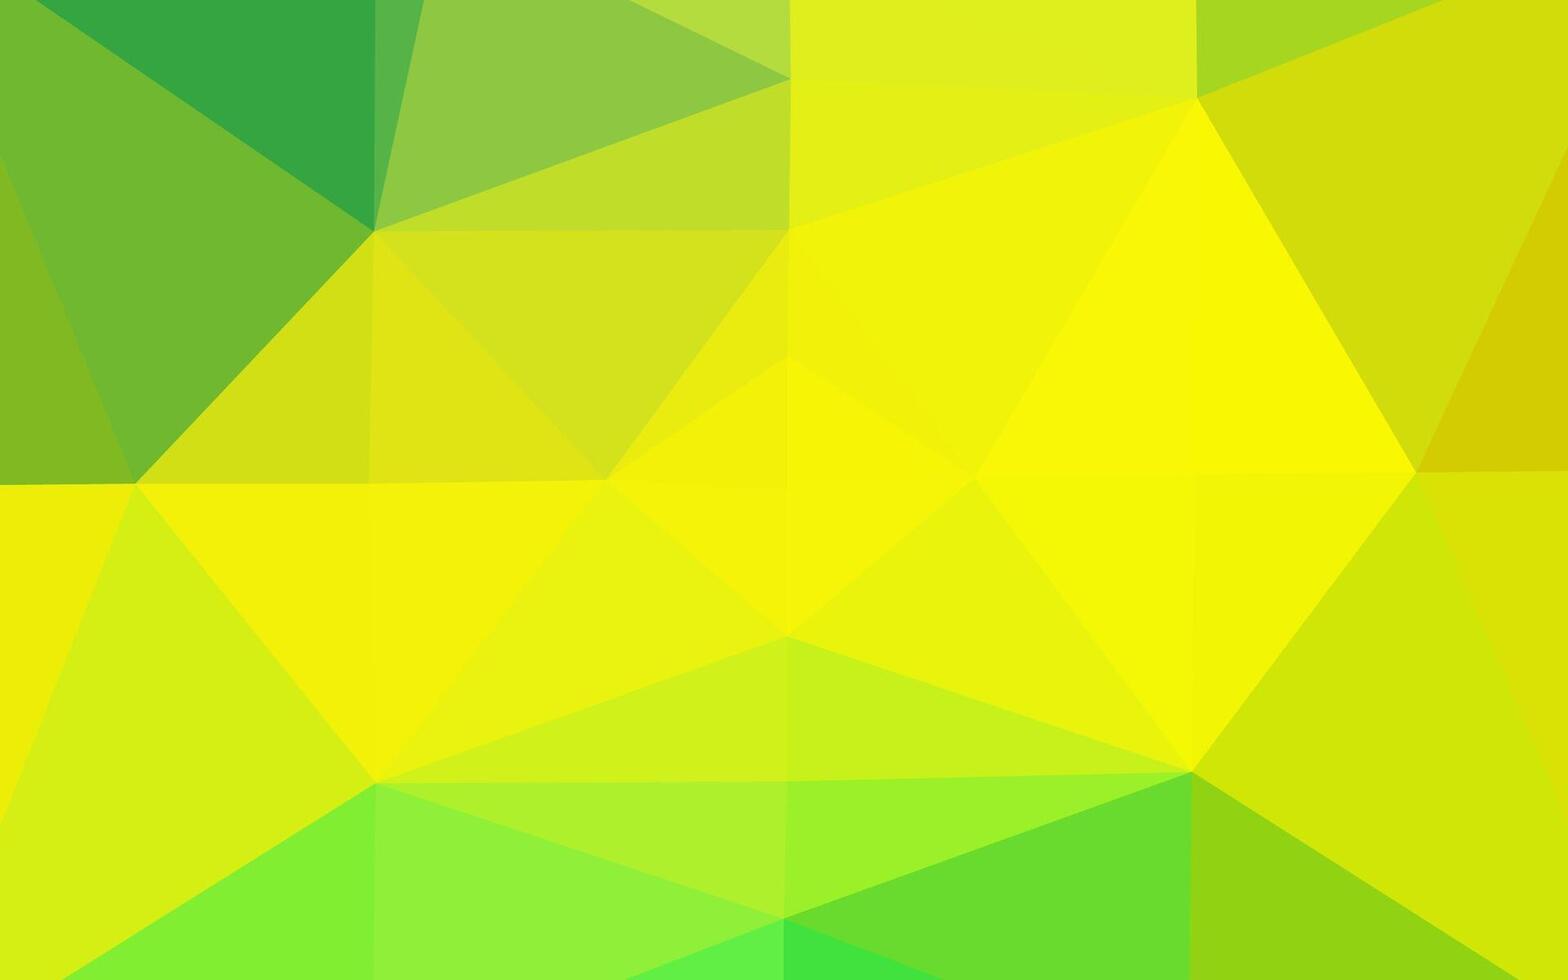 sfondo astratto poligono vettoriale verde chiaro, giallo.